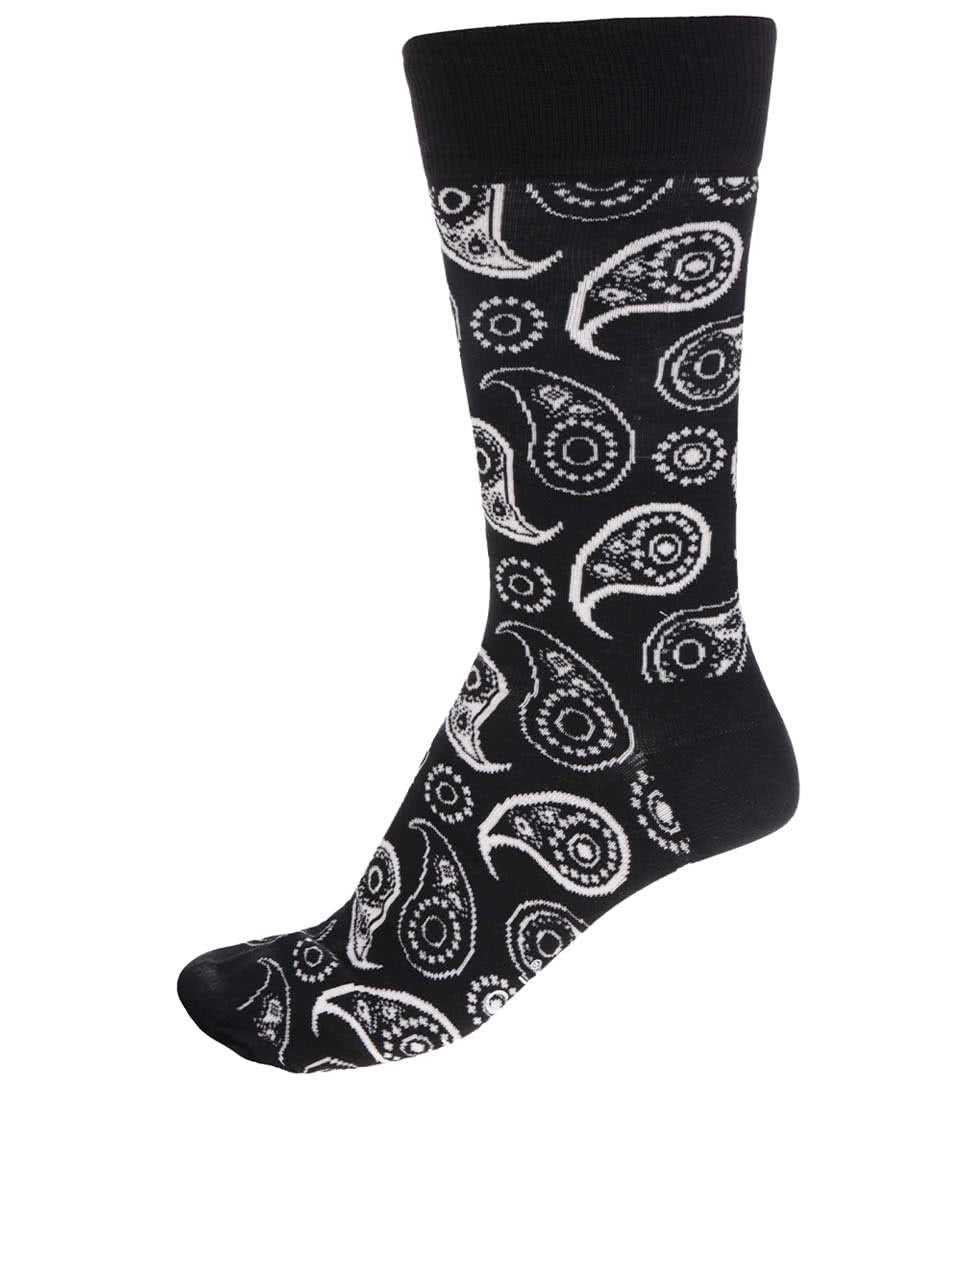 Černo-bílé vzorované pánské ponožky Happy Socks Paisley